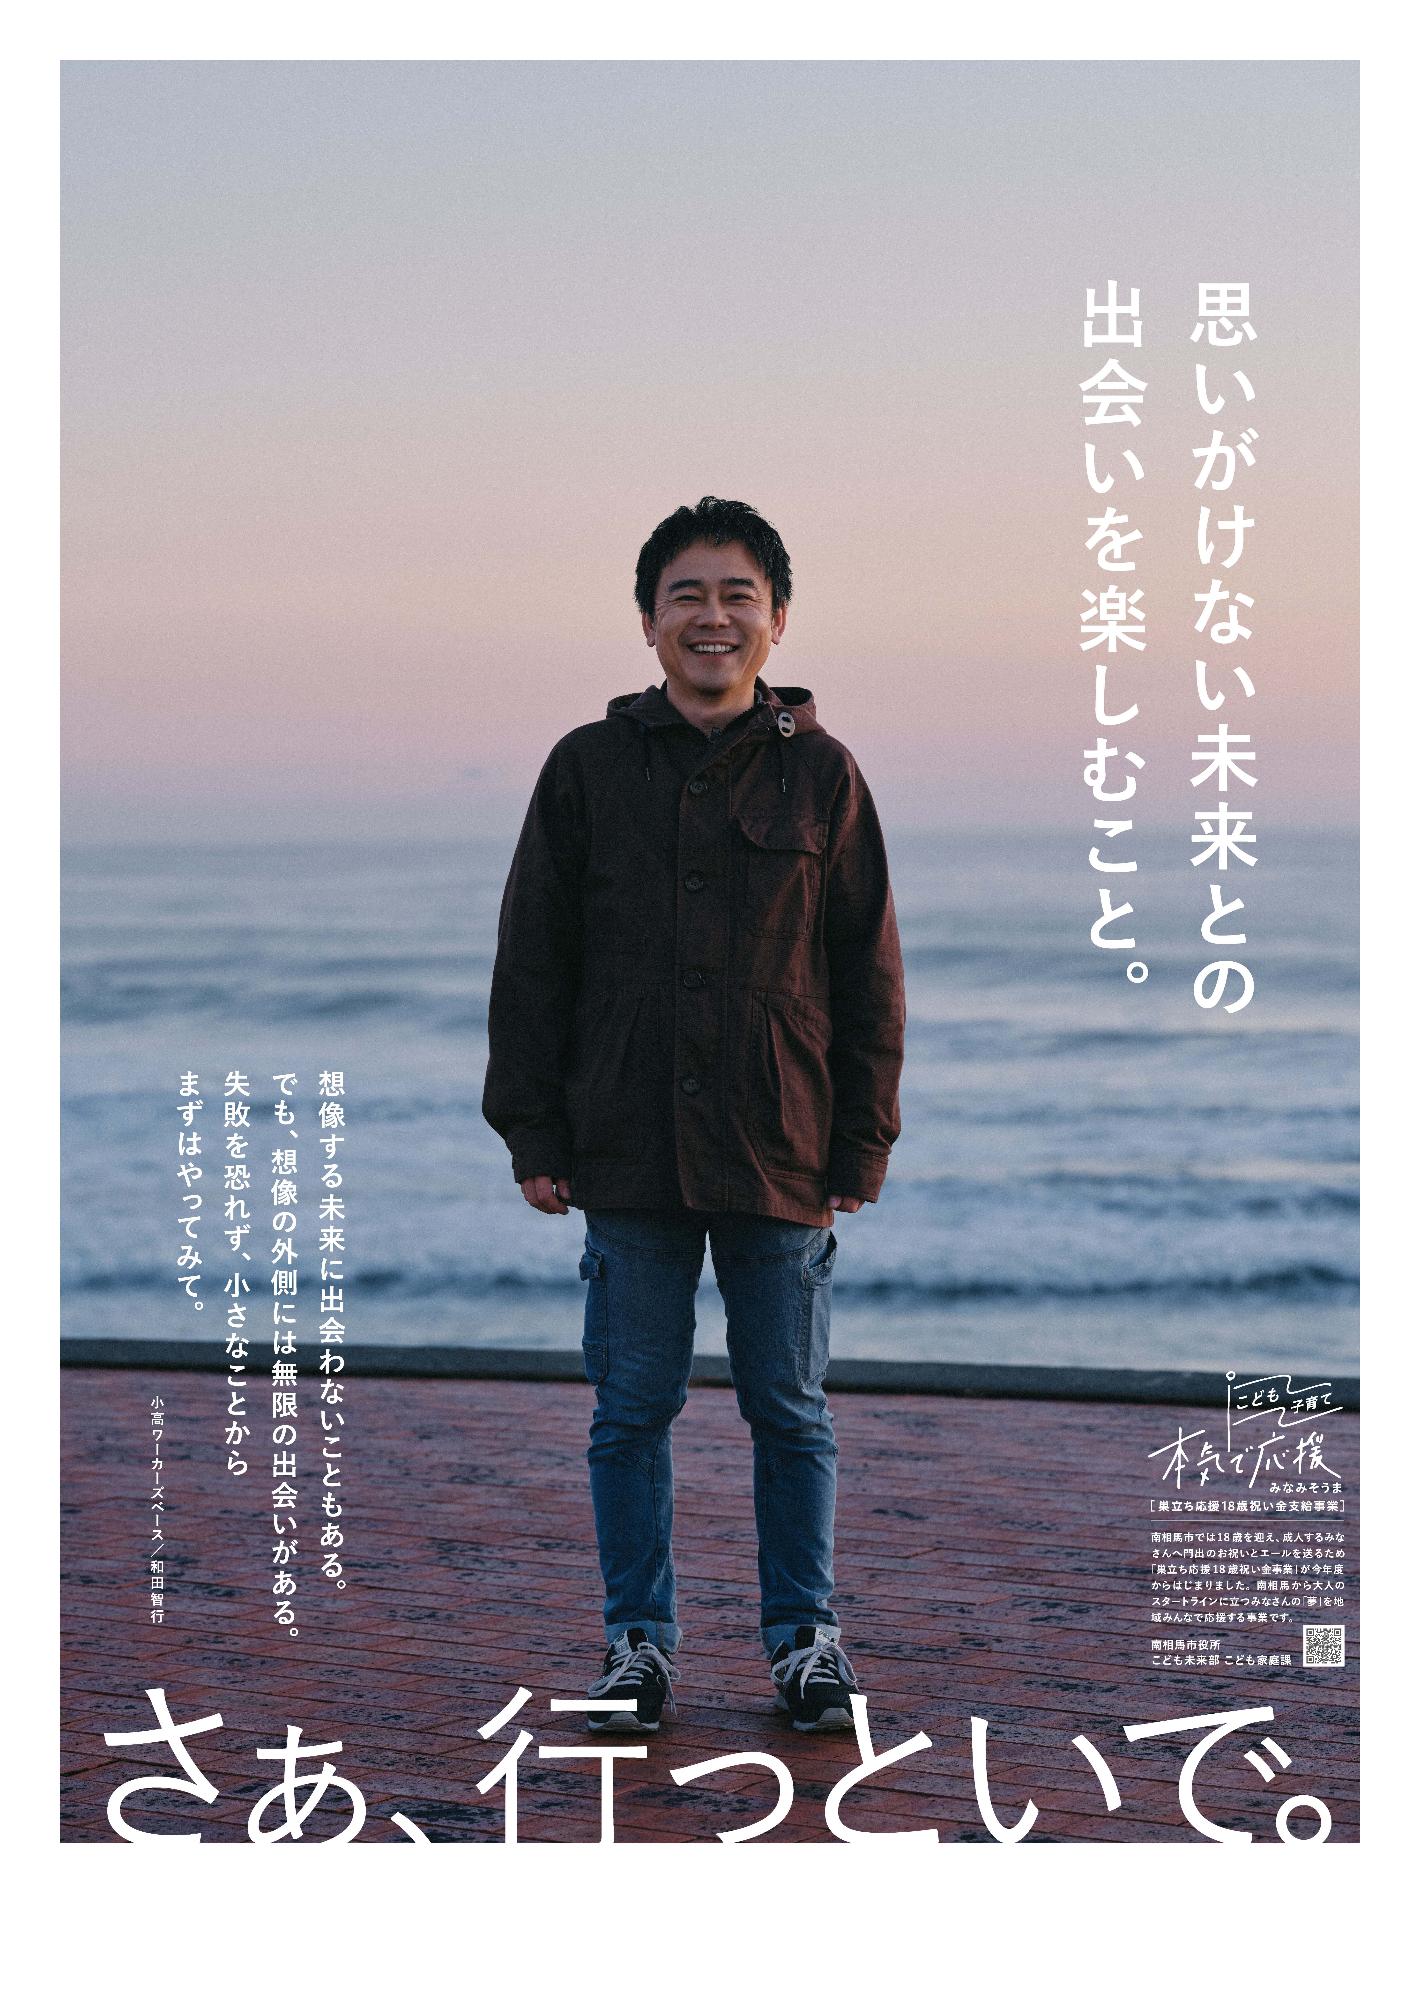 小高ワーカーズベースの和田さんのポスターです